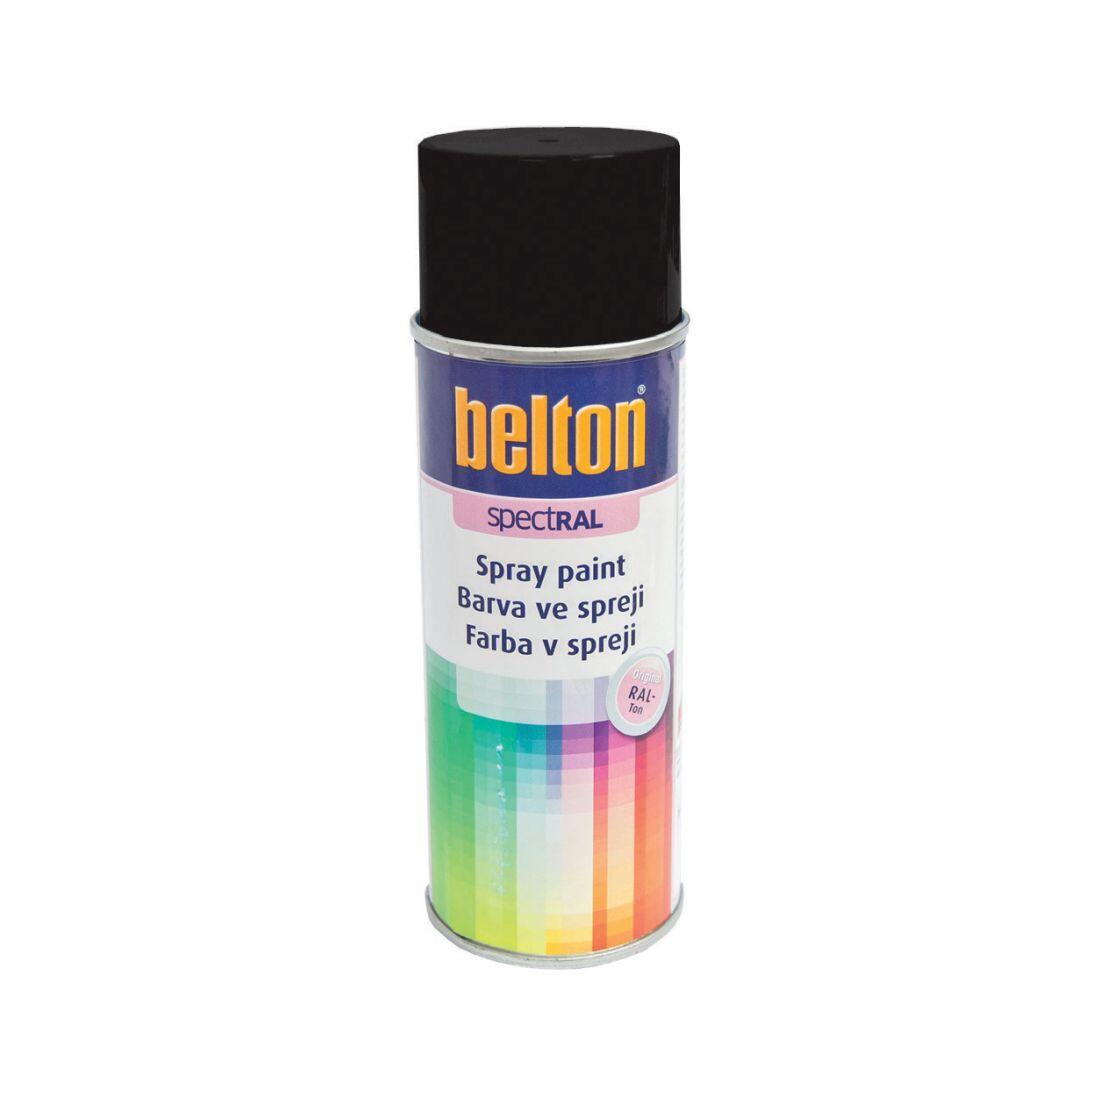 barva ve spreji BELTON RAL 9005, 400ml ČER 0.31 Kg MAXMIX Sklad14 825120 45